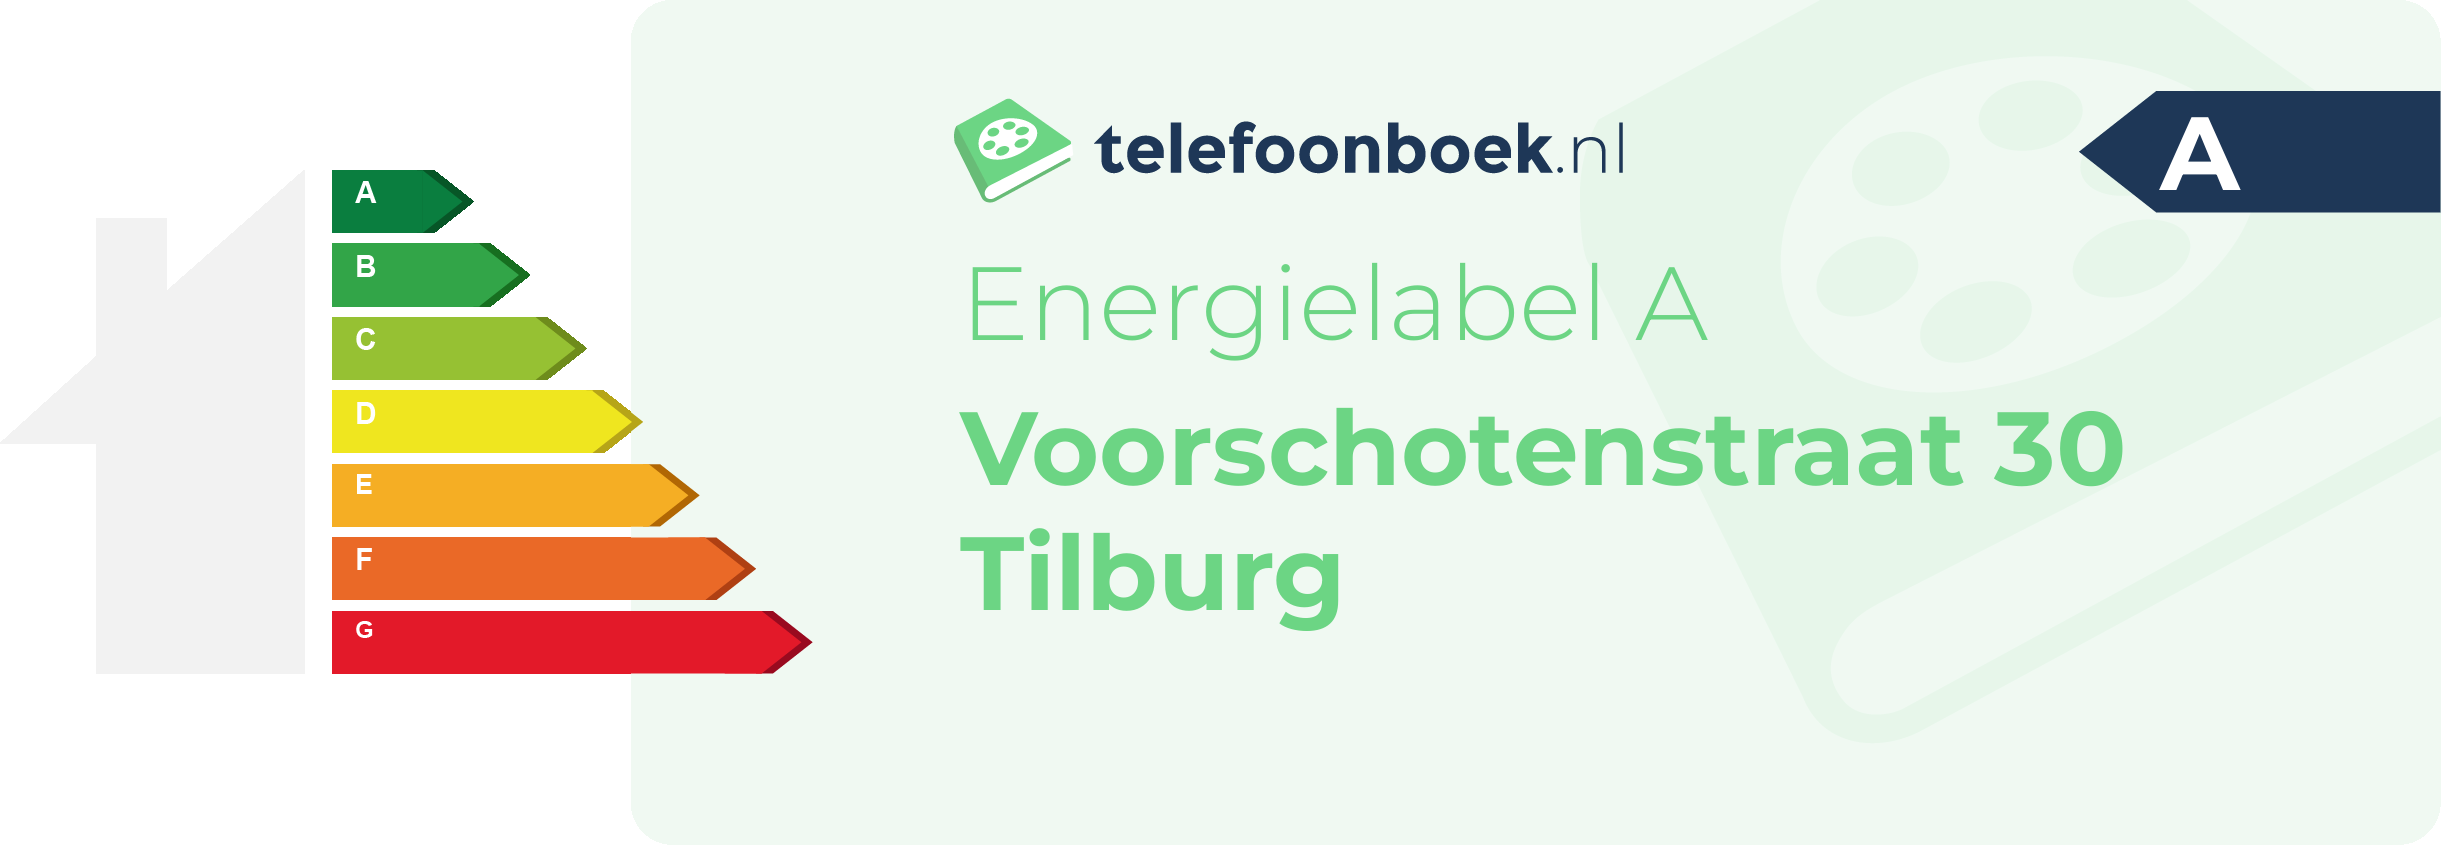 Energielabel Voorschotenstraat 30 Tilburg